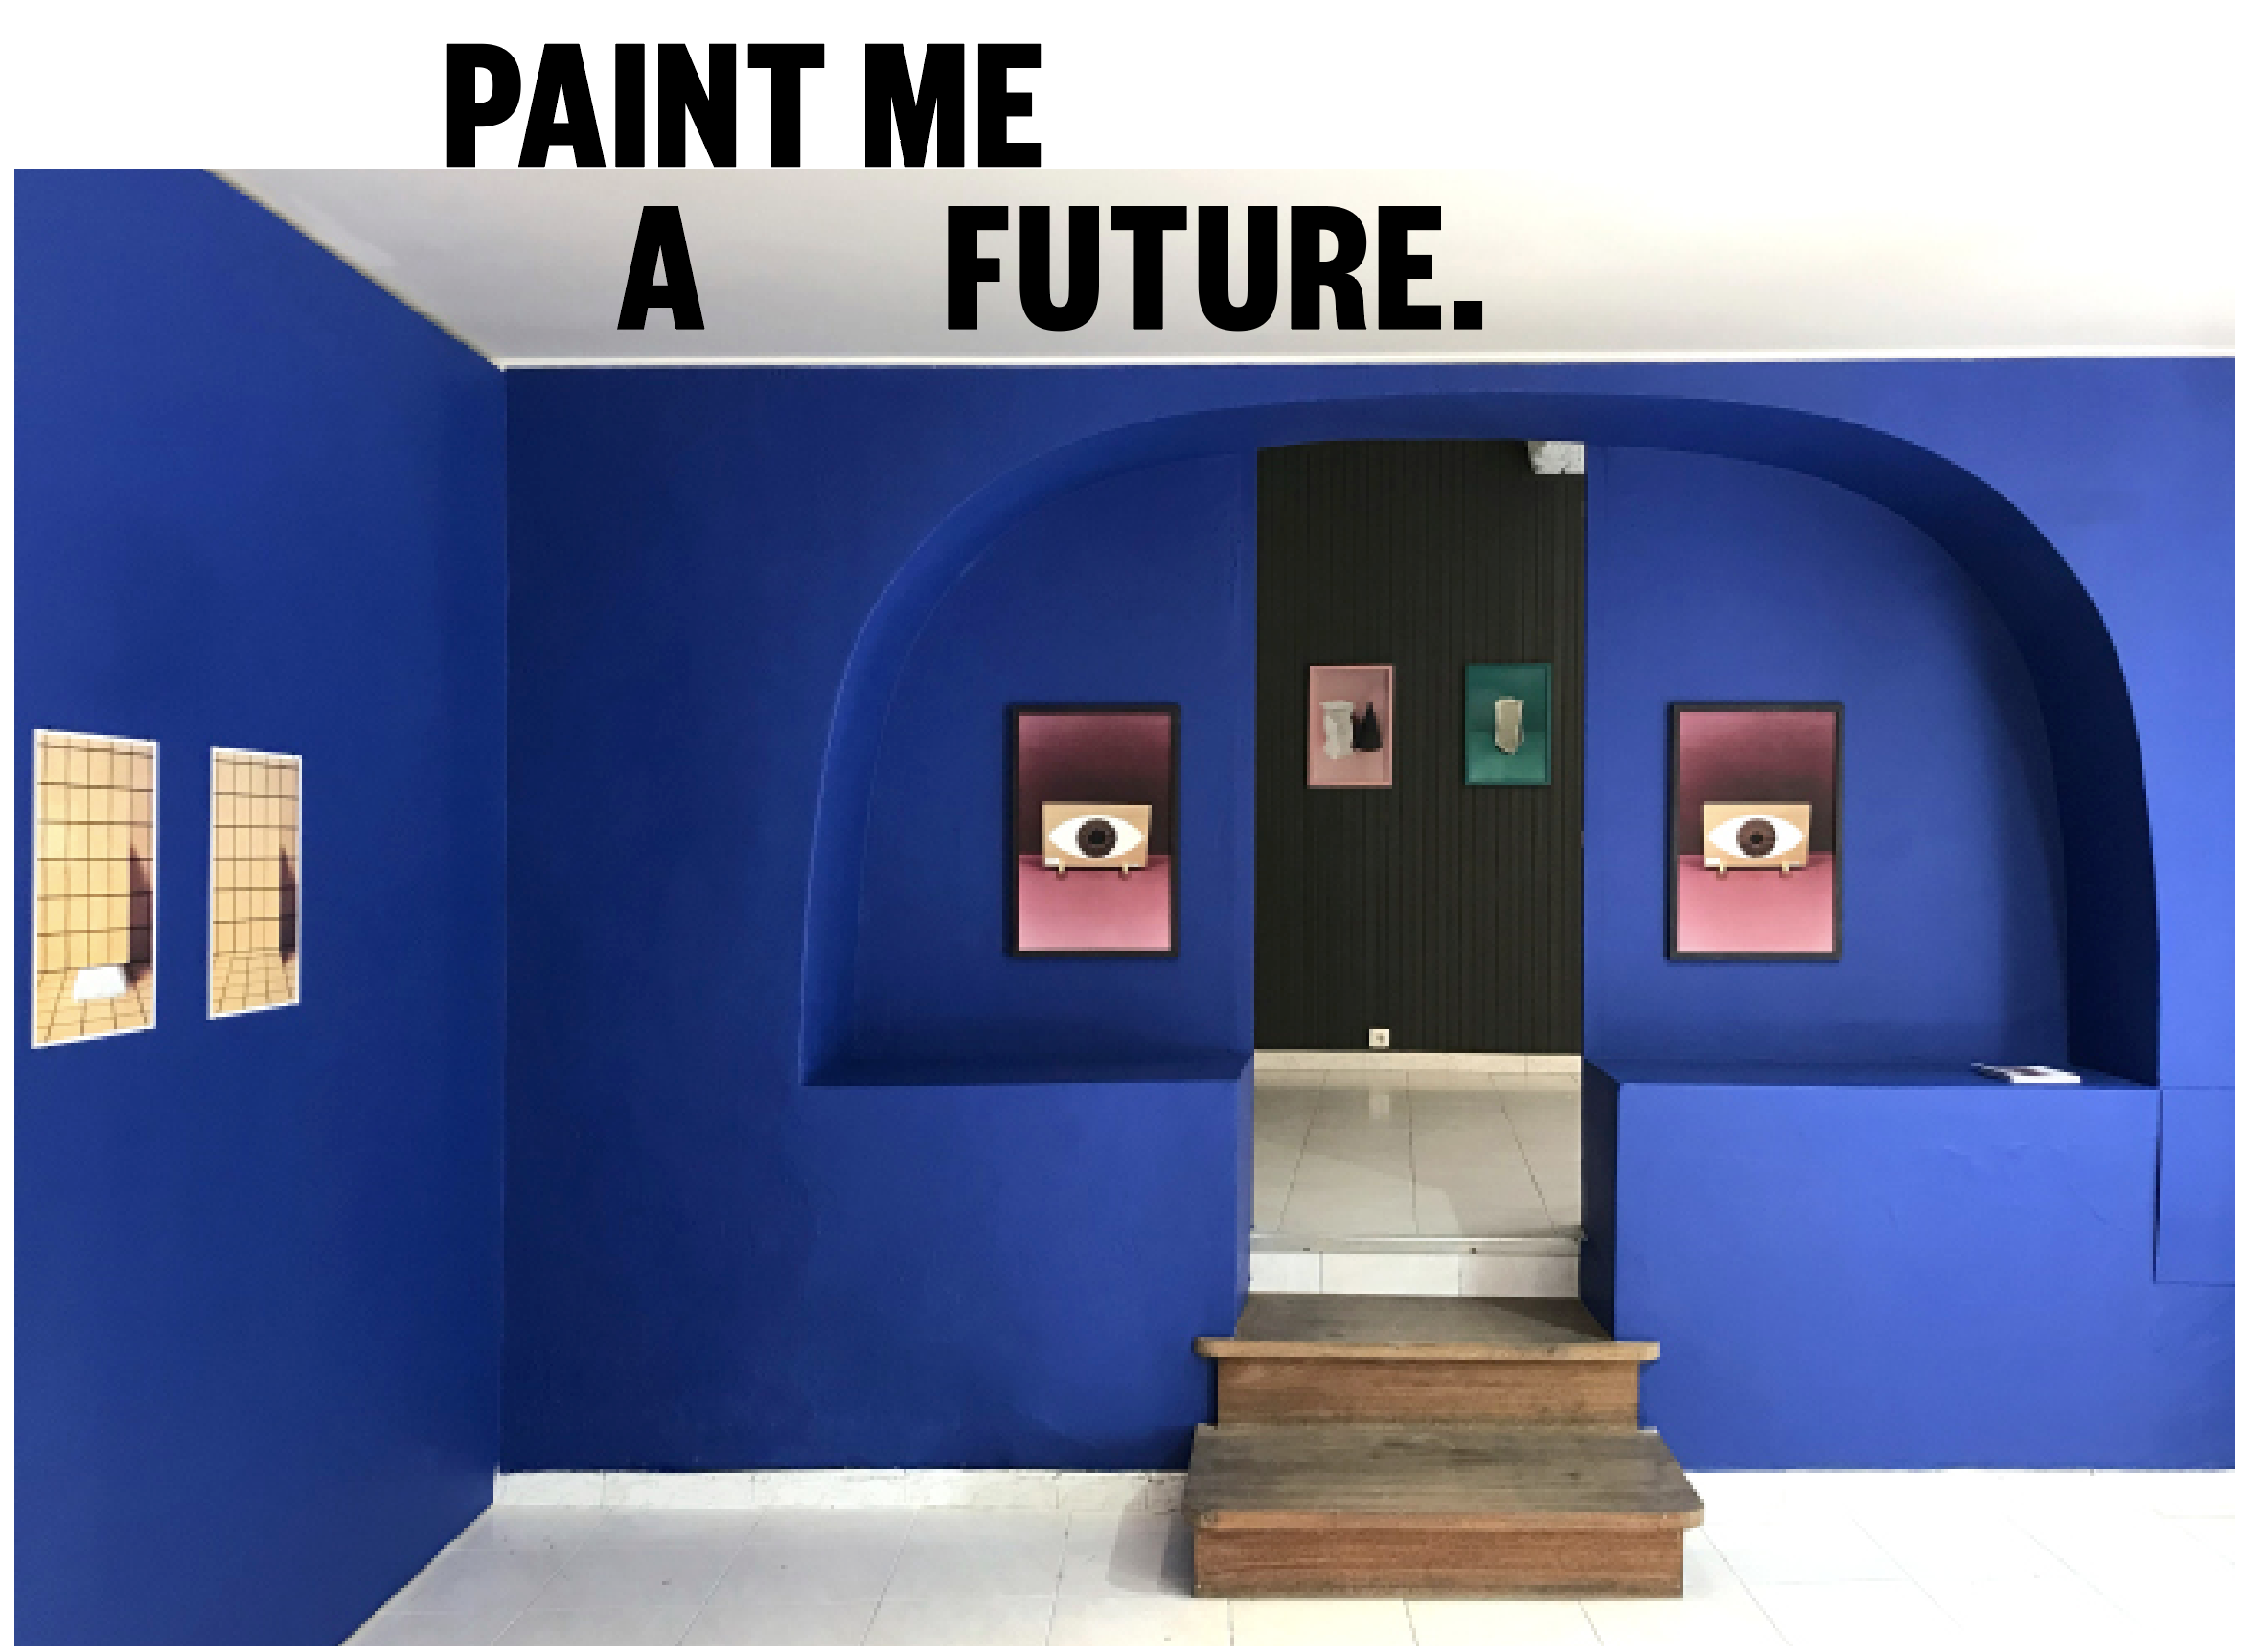 Paint me a future